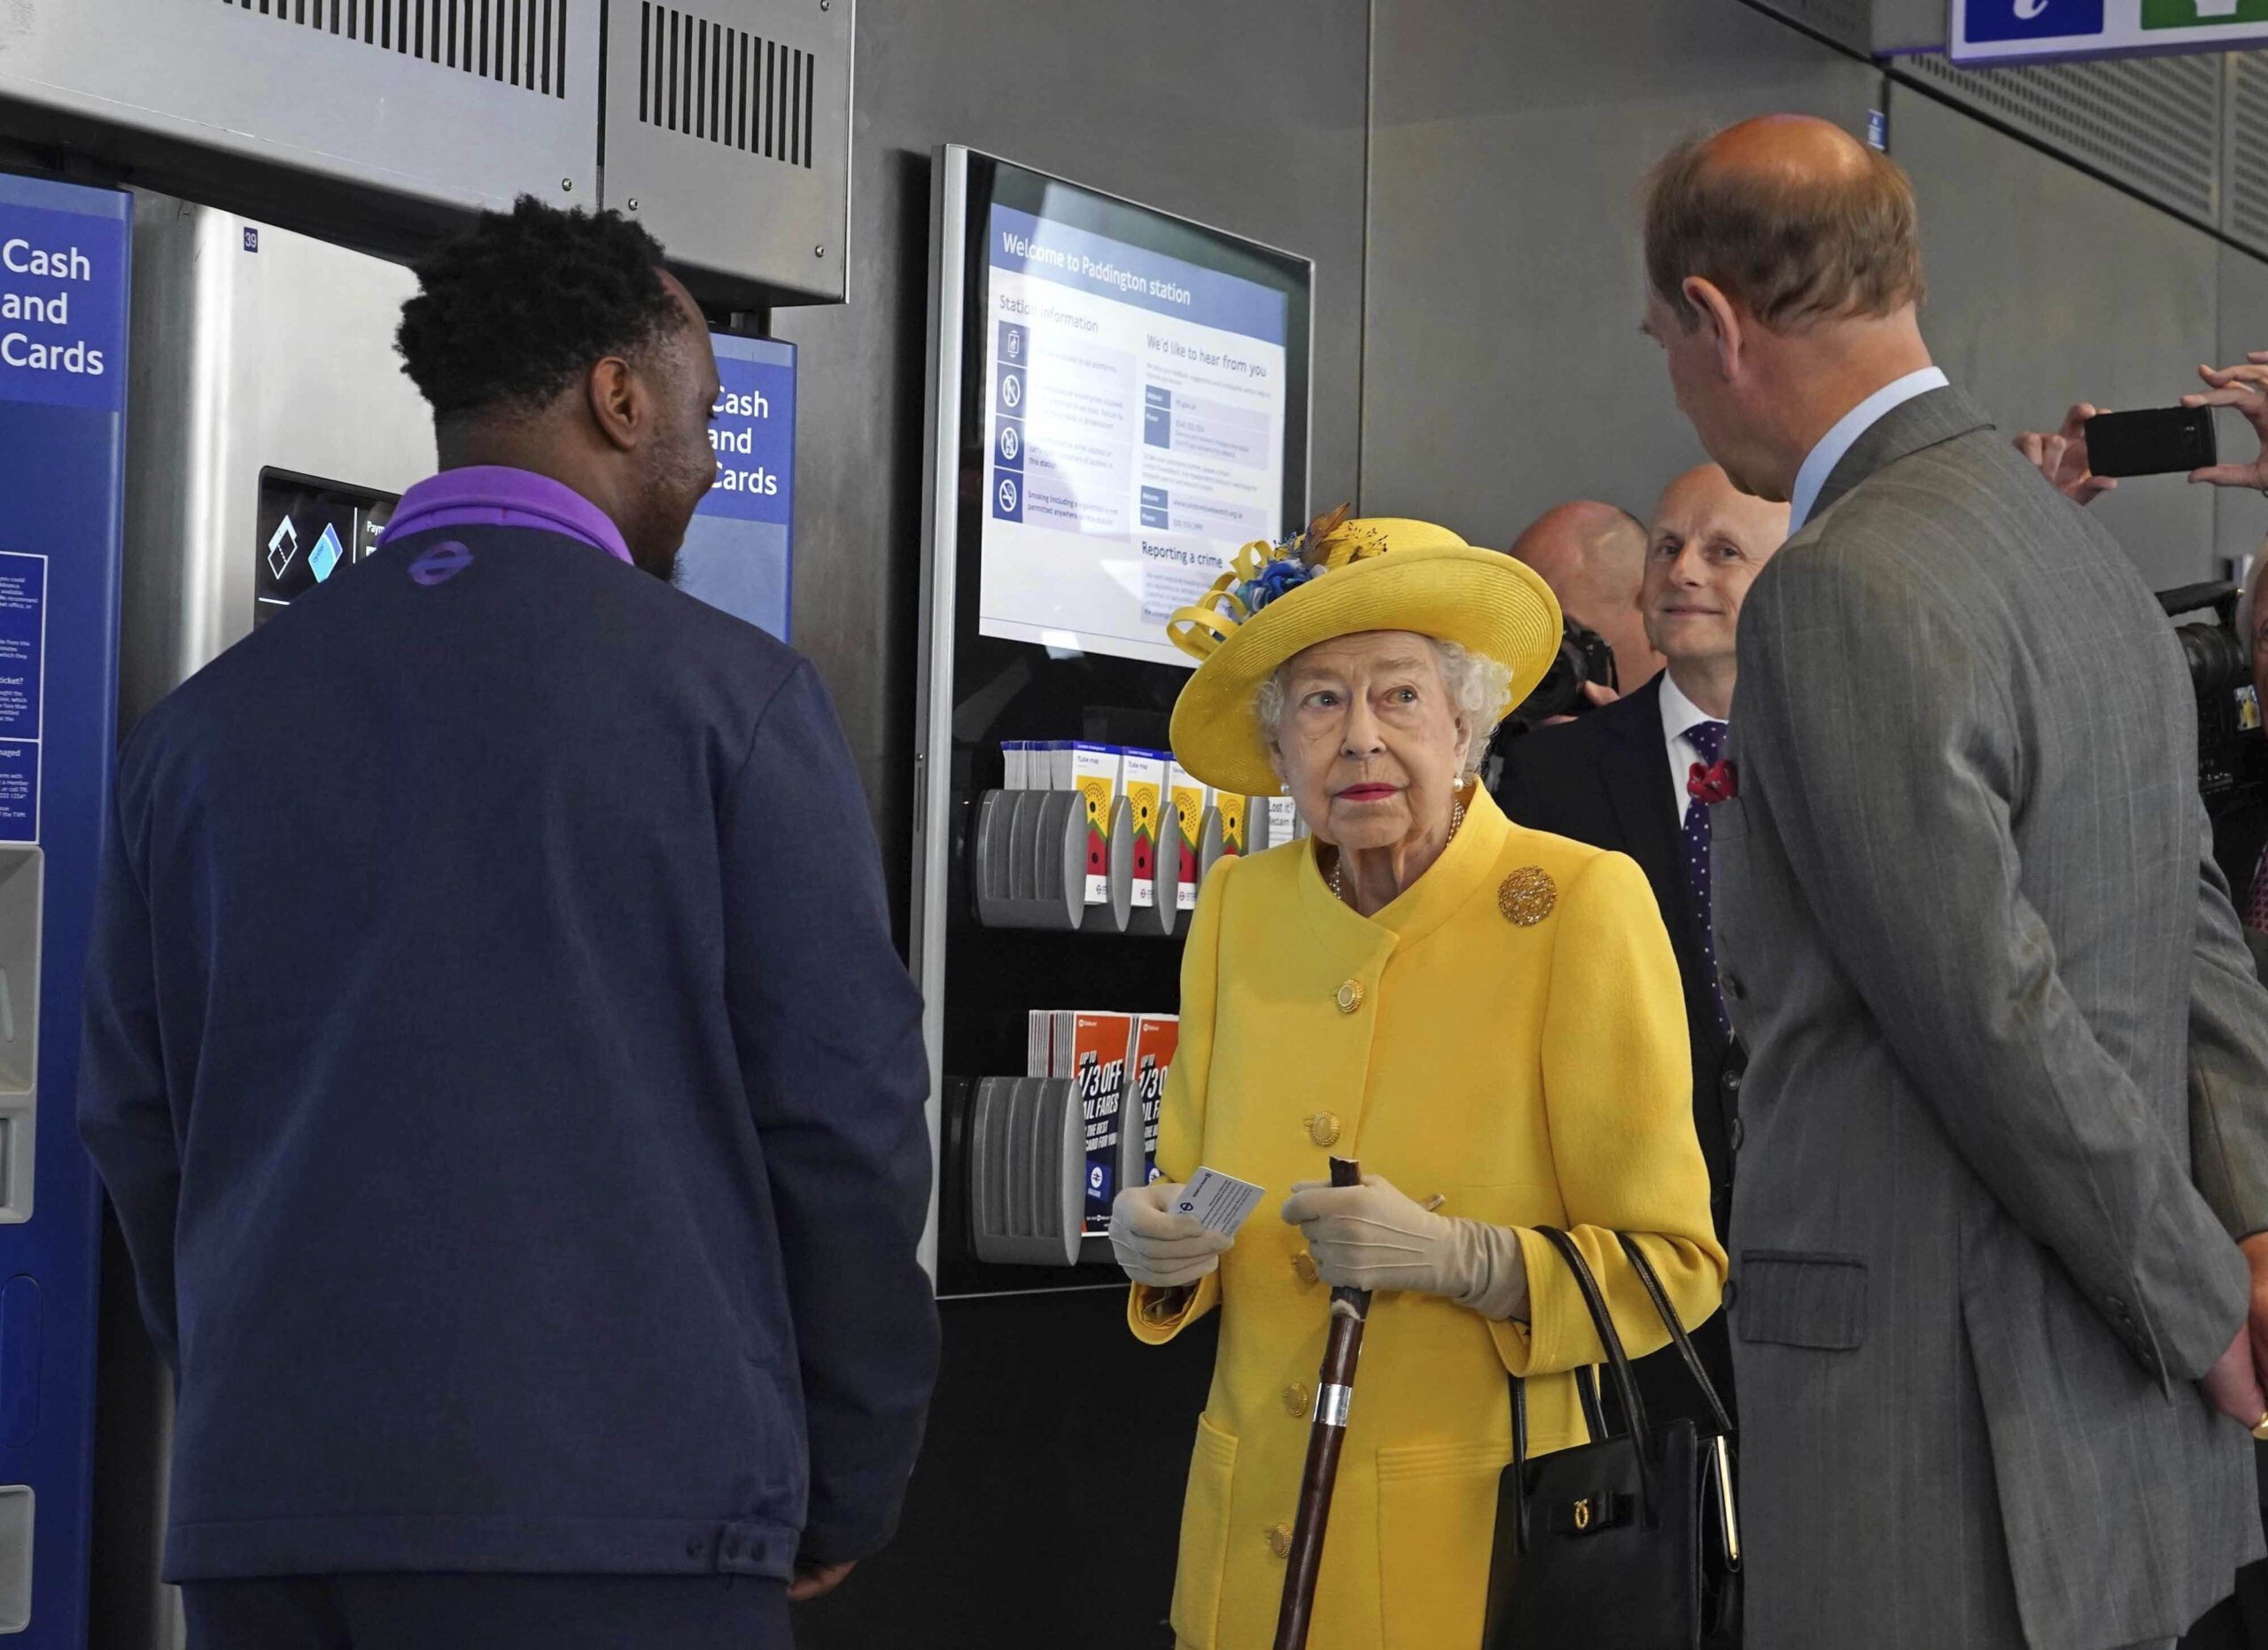 La regina Elisabetta all’inaugurazione della Metropolitana di Londra –  FOTOGALLERY